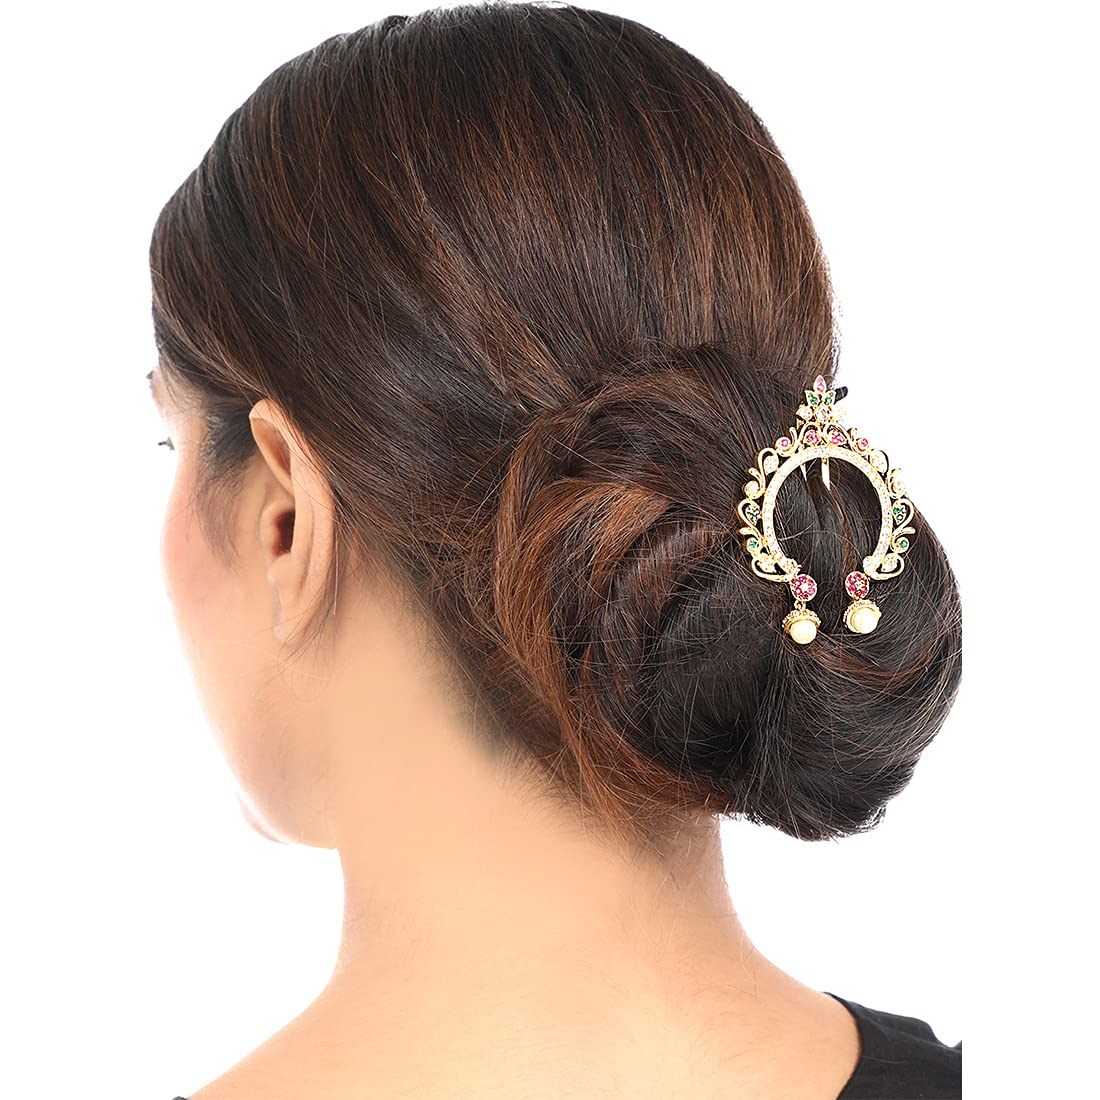 केस पातळ आहेत पण हळदीकुंकू, लग्नसमारंभासाठी सुंदर अंबाडा घालायचाय? बघा ६  सुपरट्रेण्डी प्रकार - Marathi News | Juda or ambada hair style for wedding  for thin hair, bun hair ...